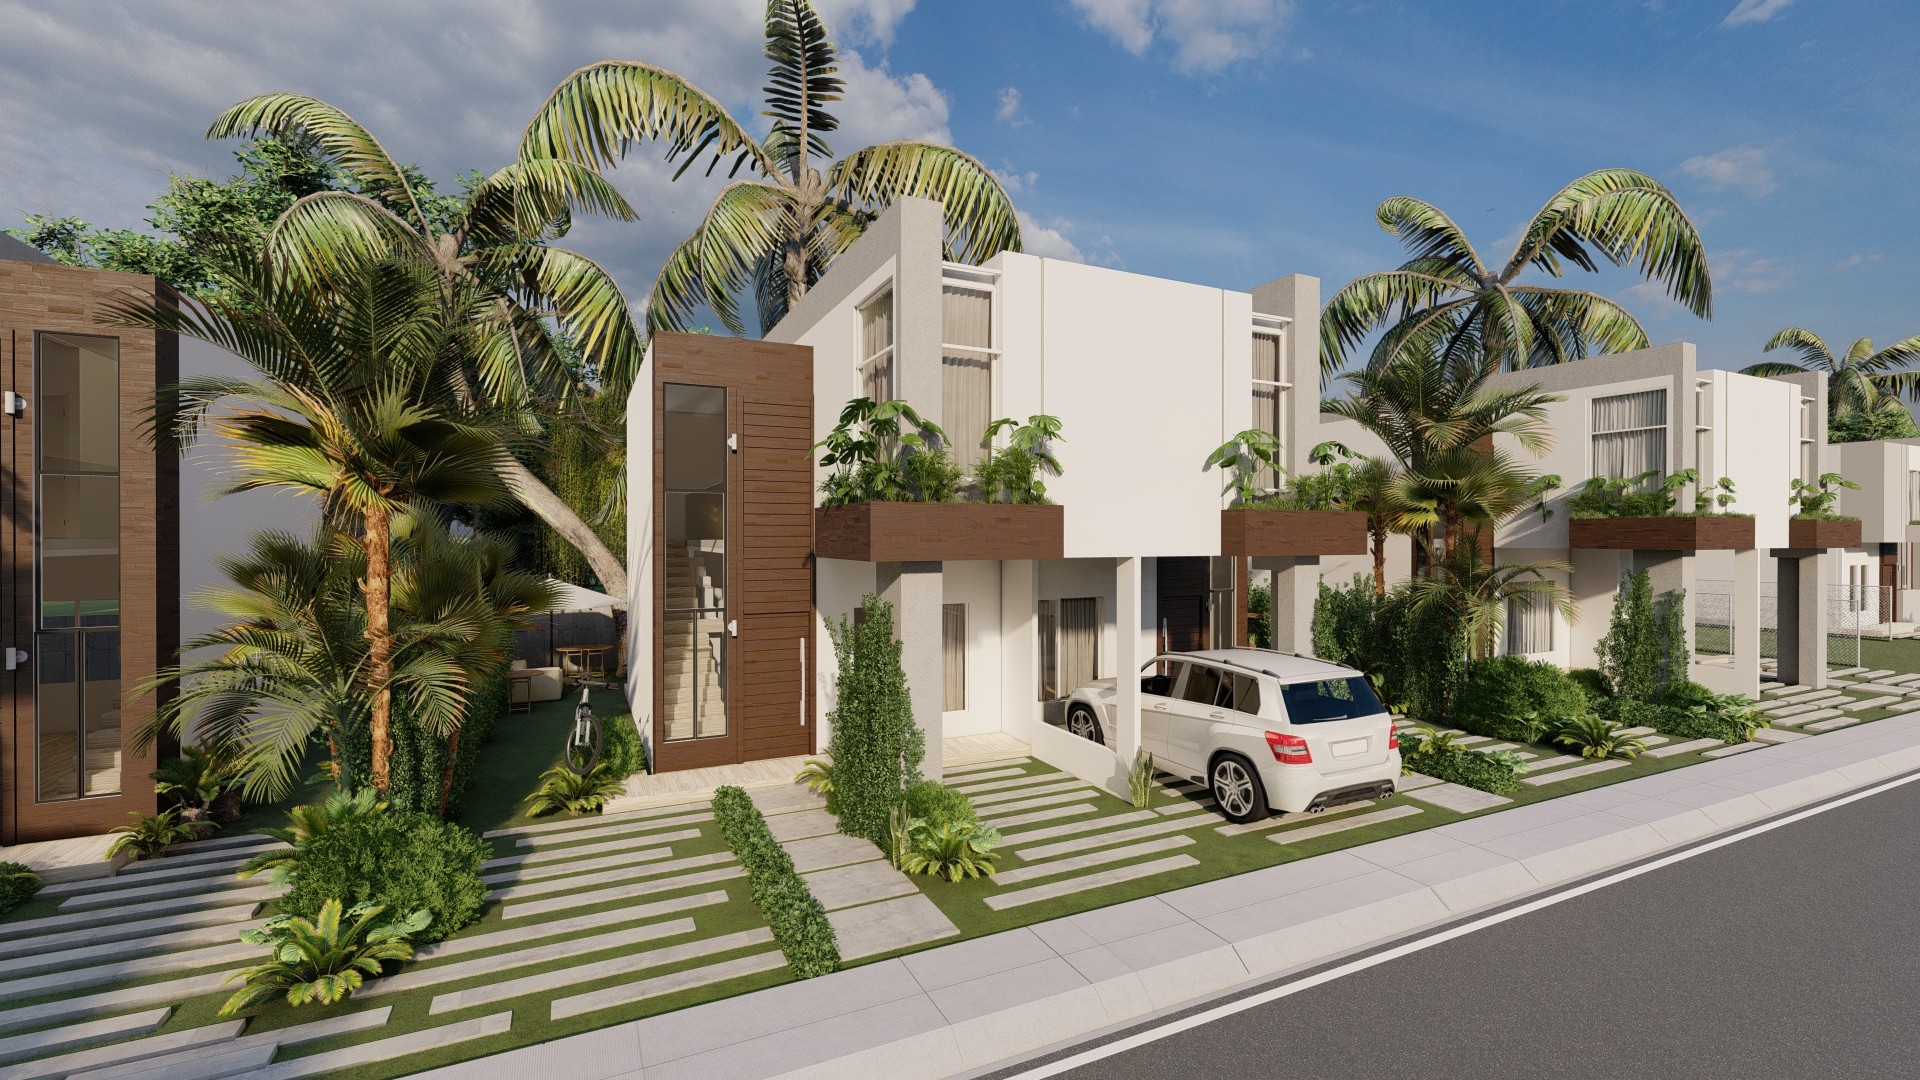 casas vacacionales y villas - Casas y Townhouses Economicos en Punta Cana - Casas en Punta Cana